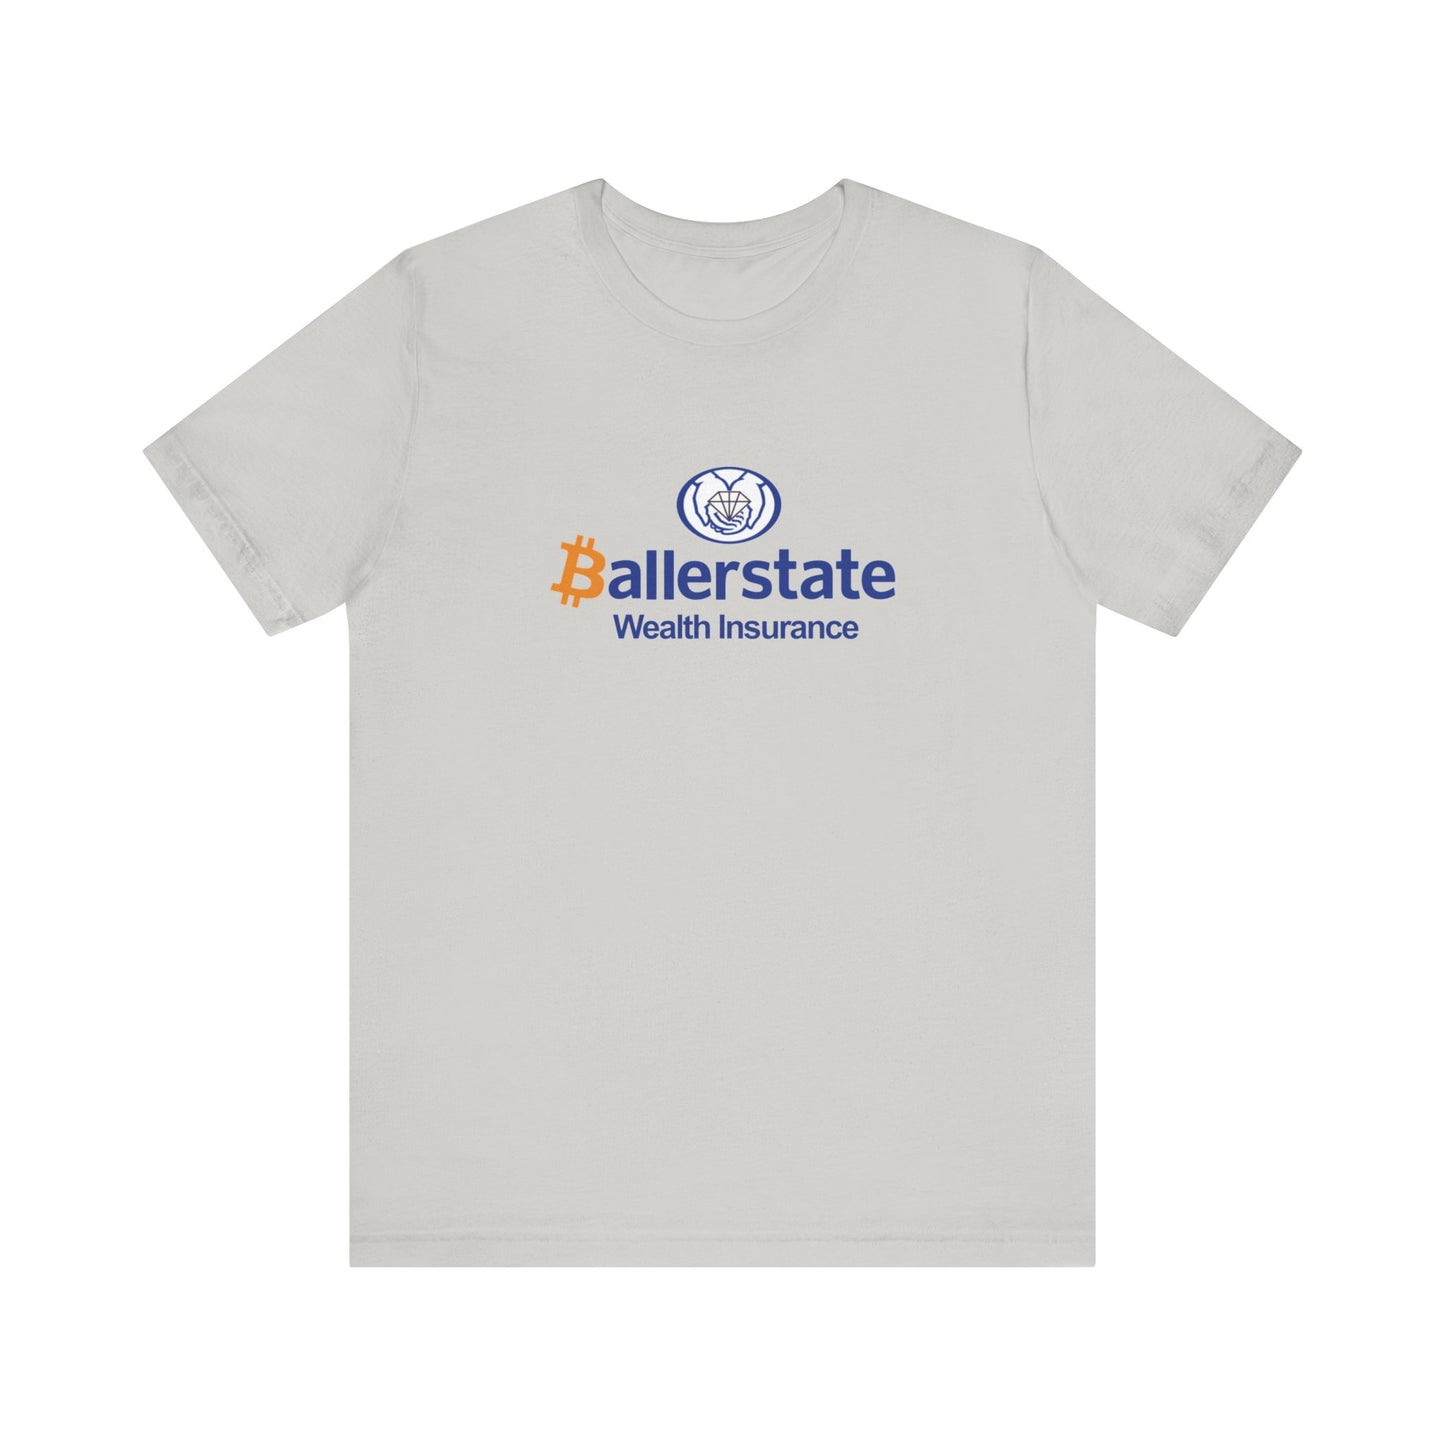 'Baller'state Insurance - Unisex T-Shirt